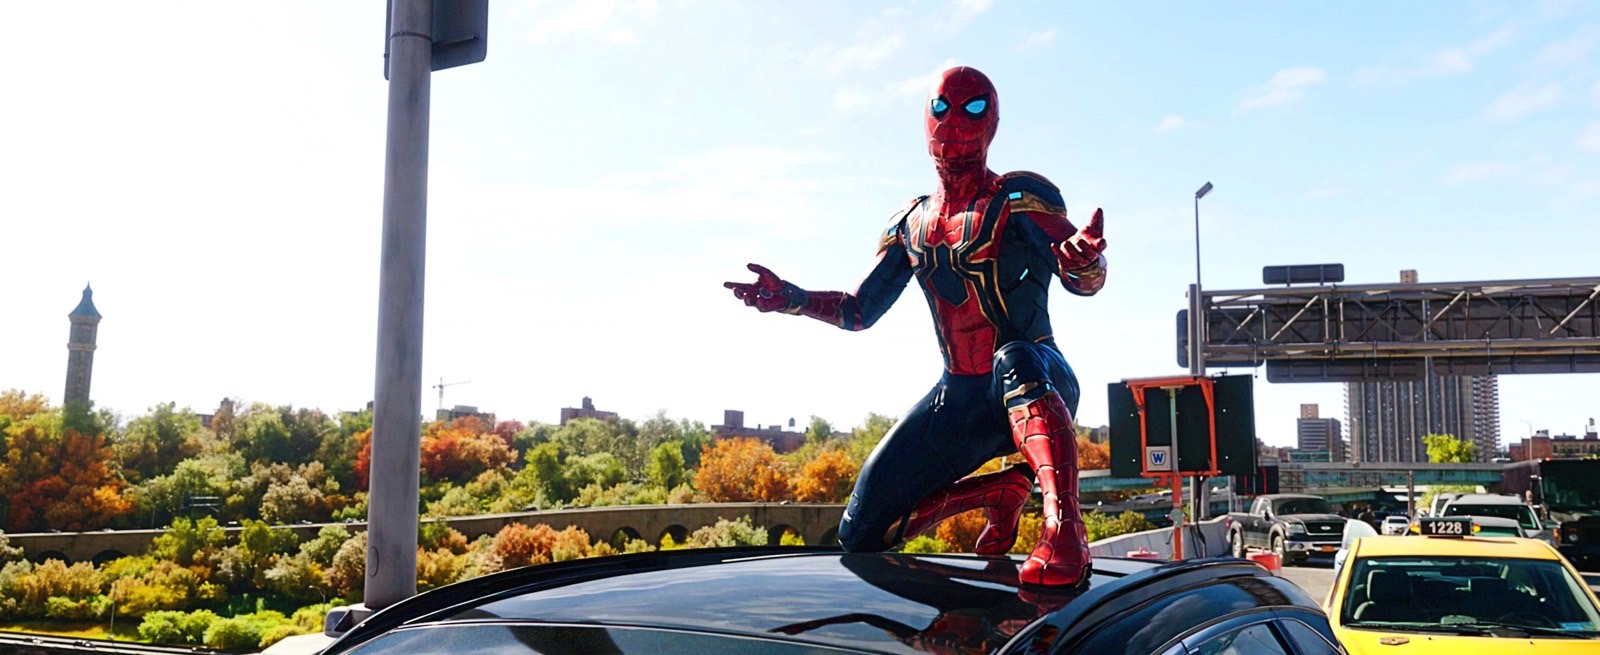 Spider-Man in No Way Home bridge fight scene